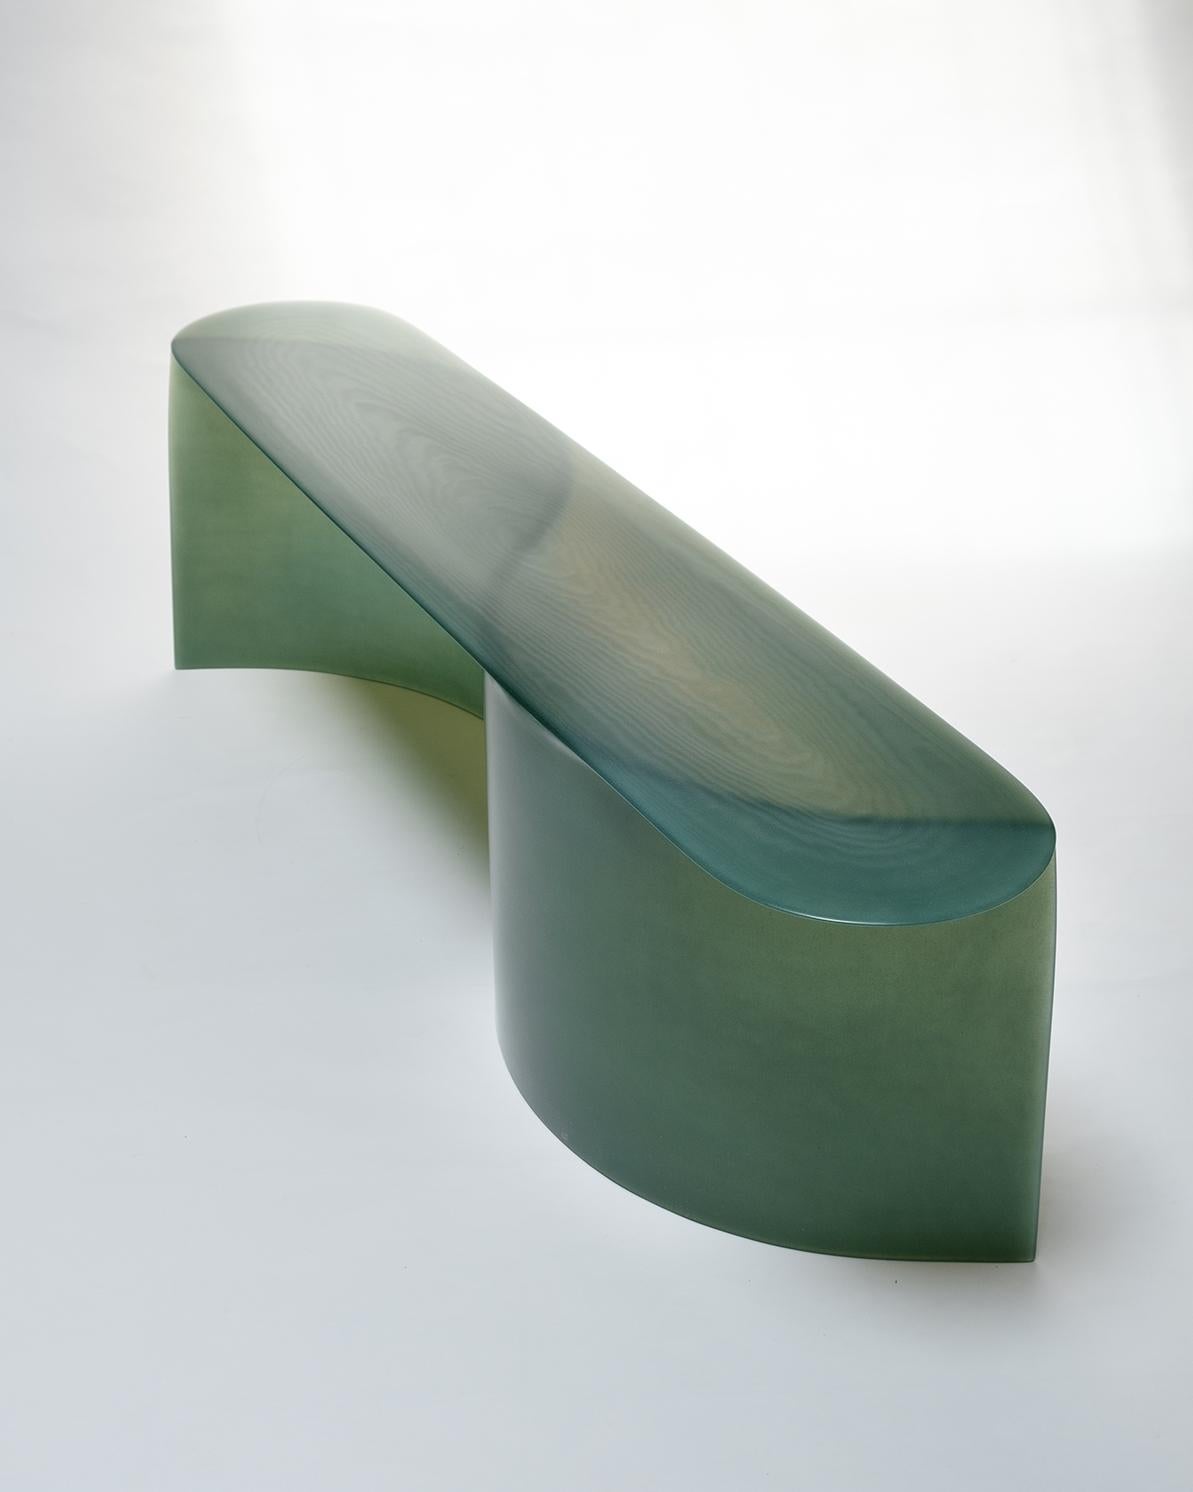 Zeitgenössische New Wave-Bank aus grünem Glasfaser, 160 cm, von Lukas Cober (Niederländisch)